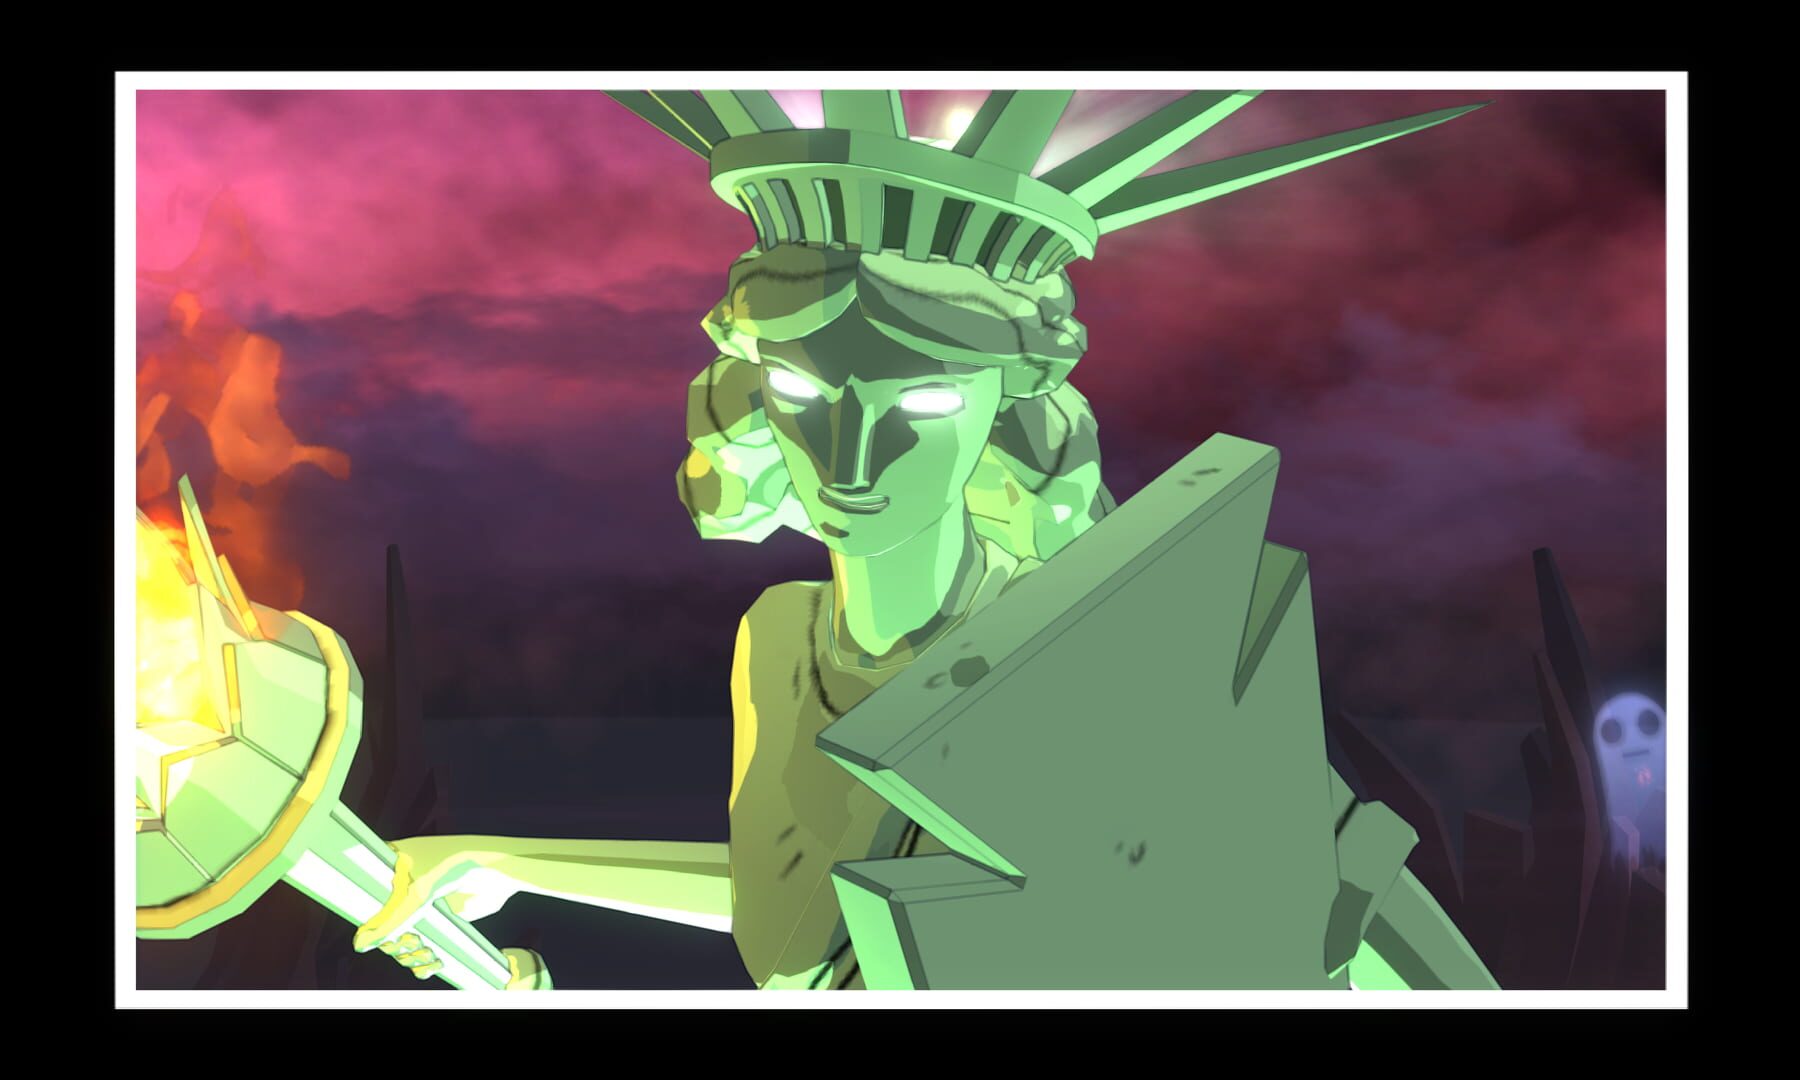 Costume Quest screenshots